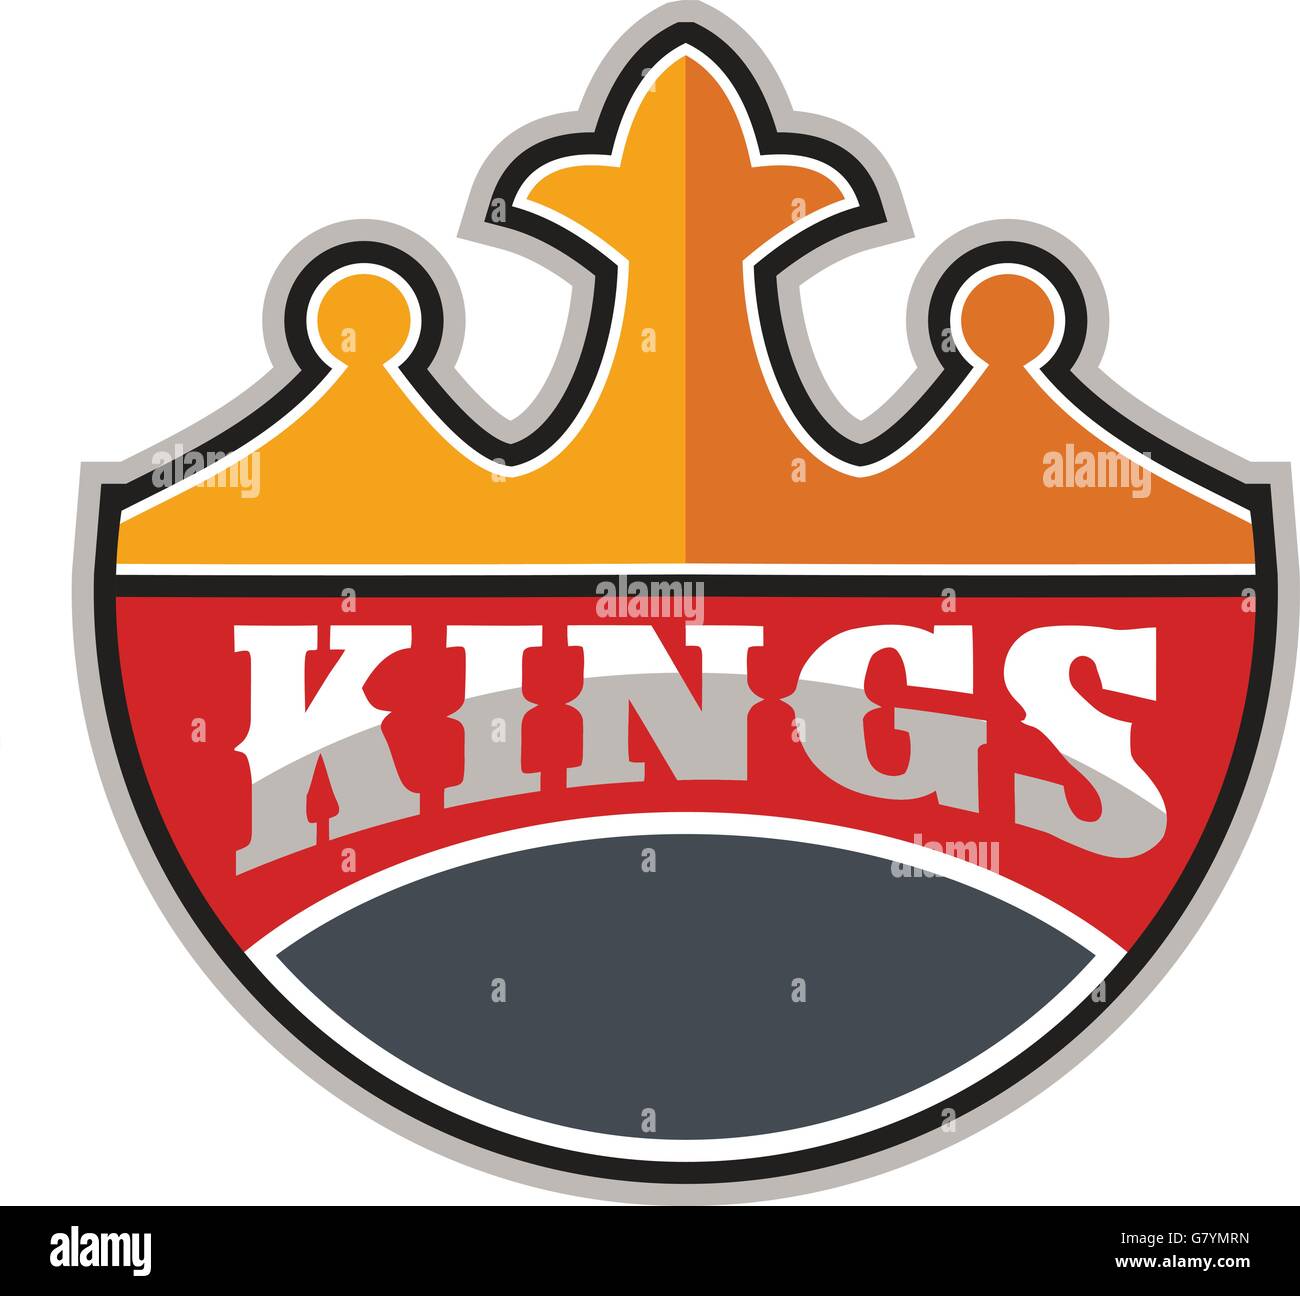 Illustration d'une couronne du roi avec le mot Kings à elle fixée sur un fond blanc fait en style rétro. Illustration de Vecteur